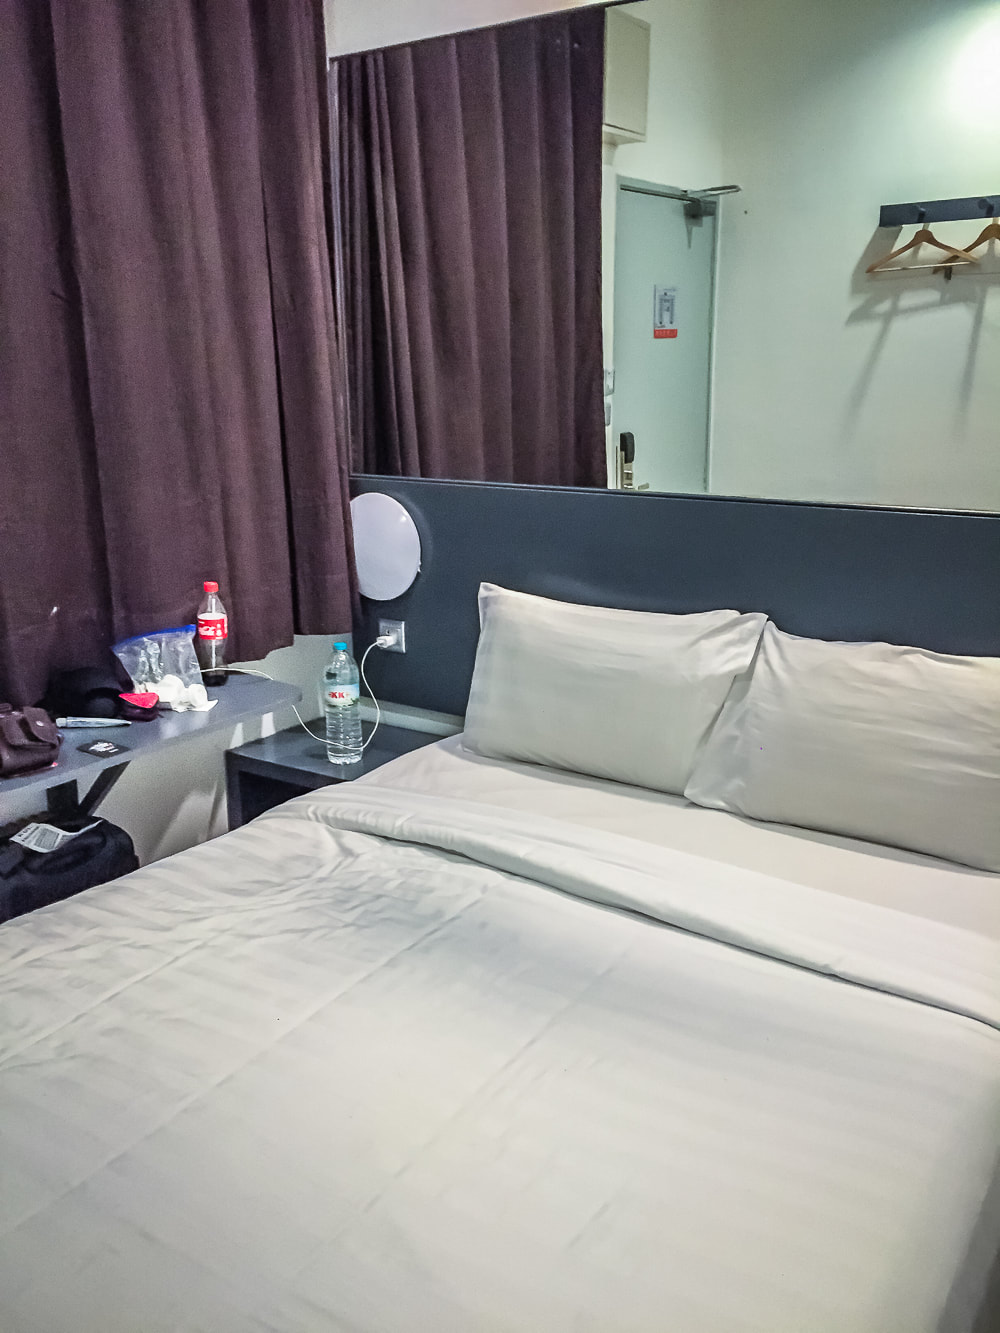 Inside room 121 at Tune Hotel KLIA Aeropolis. Sepang, Malaysia.